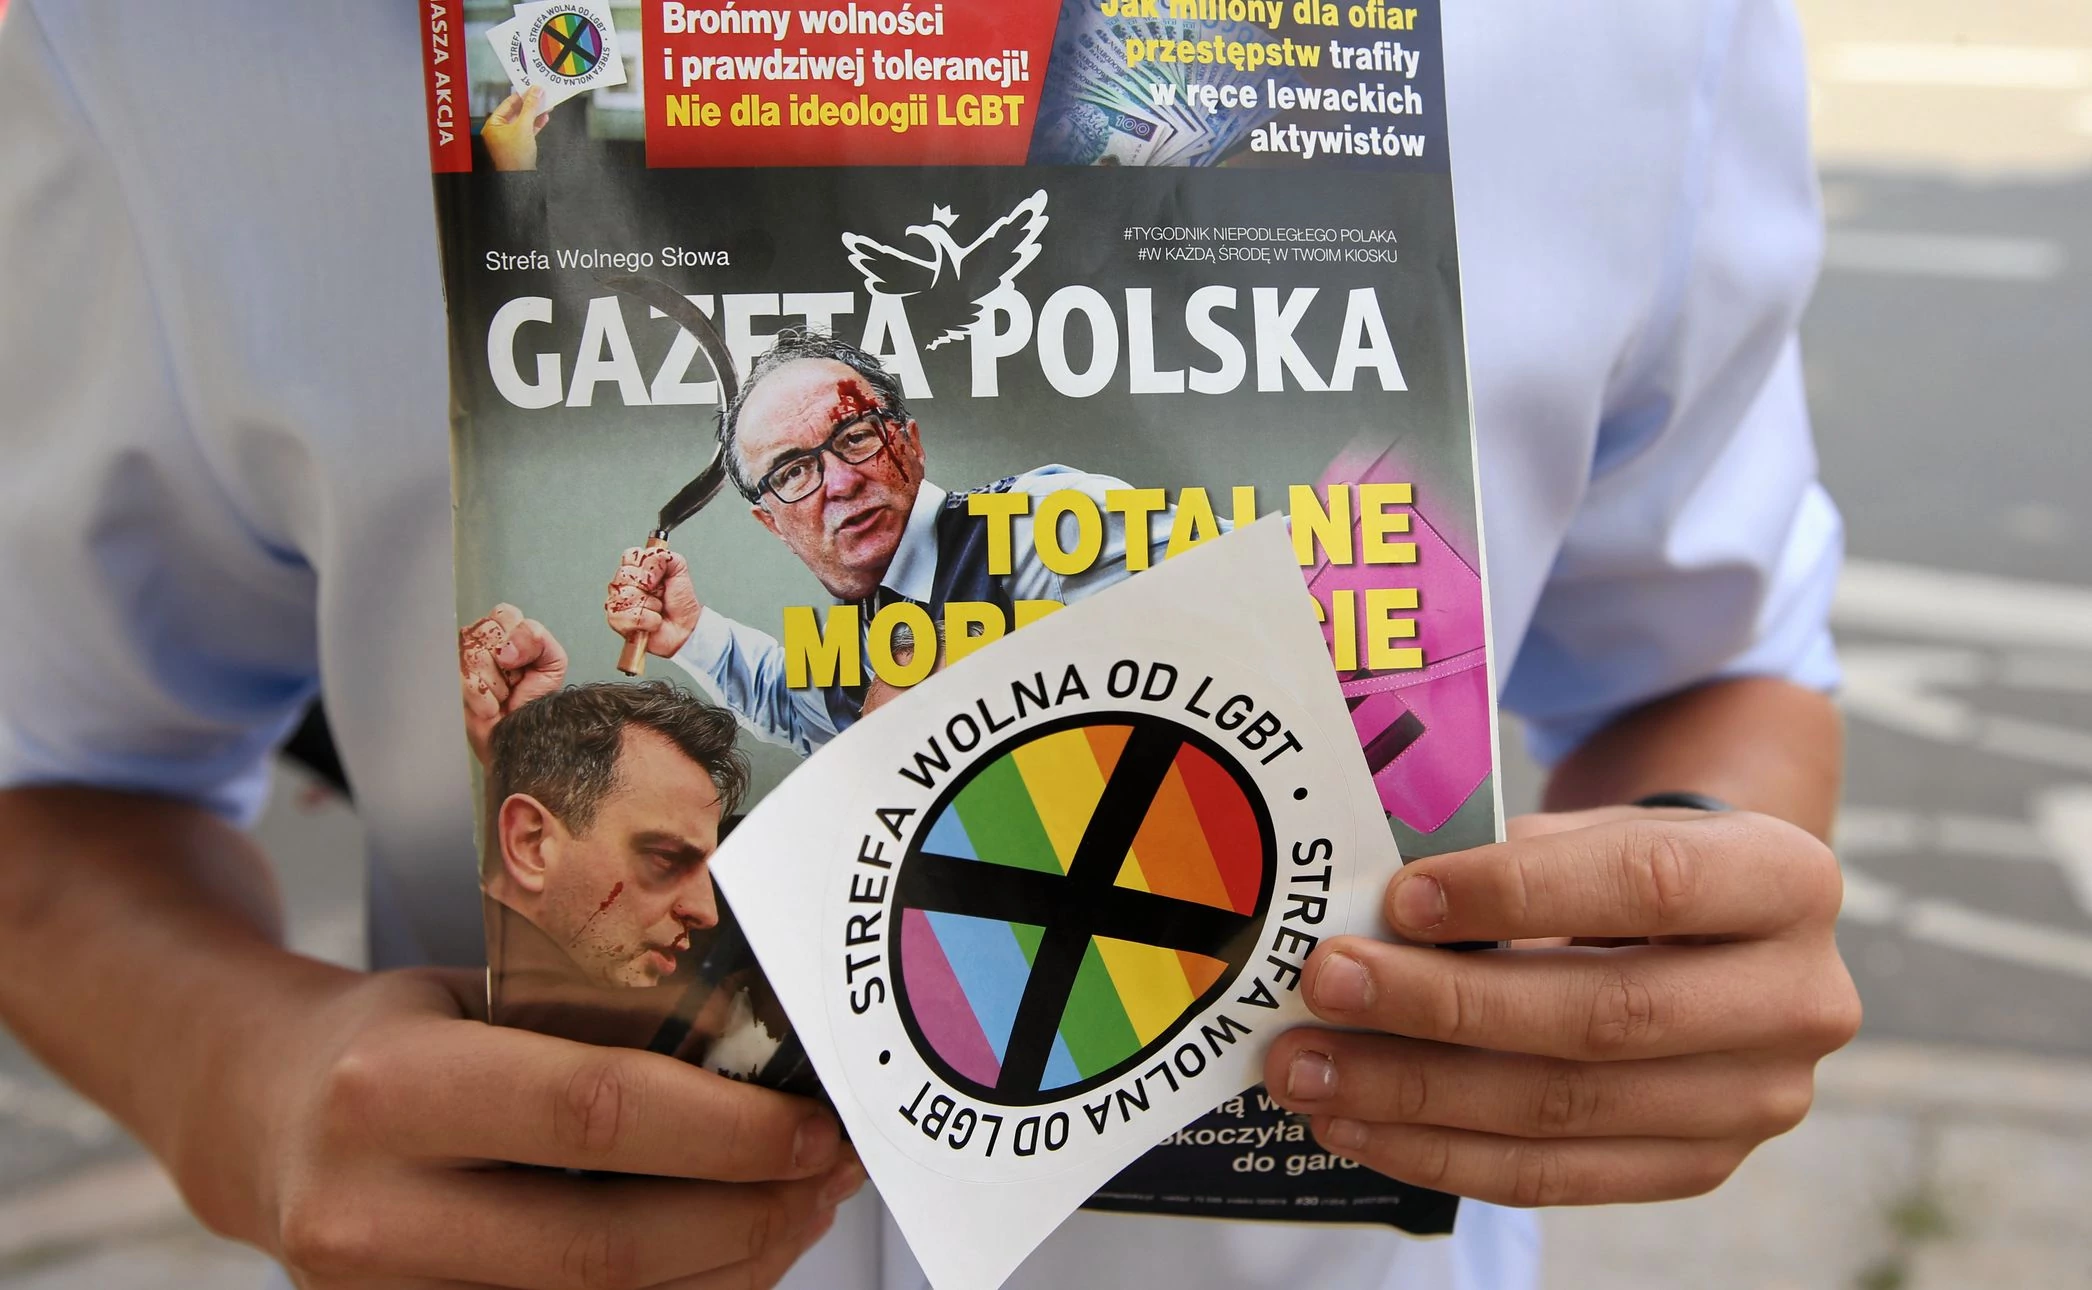 Sąd nakazuje wycofanie naklejek "Strefa wolna od LGBT". Wydawca zaskarży tę  decyzję - Dziennik.pl